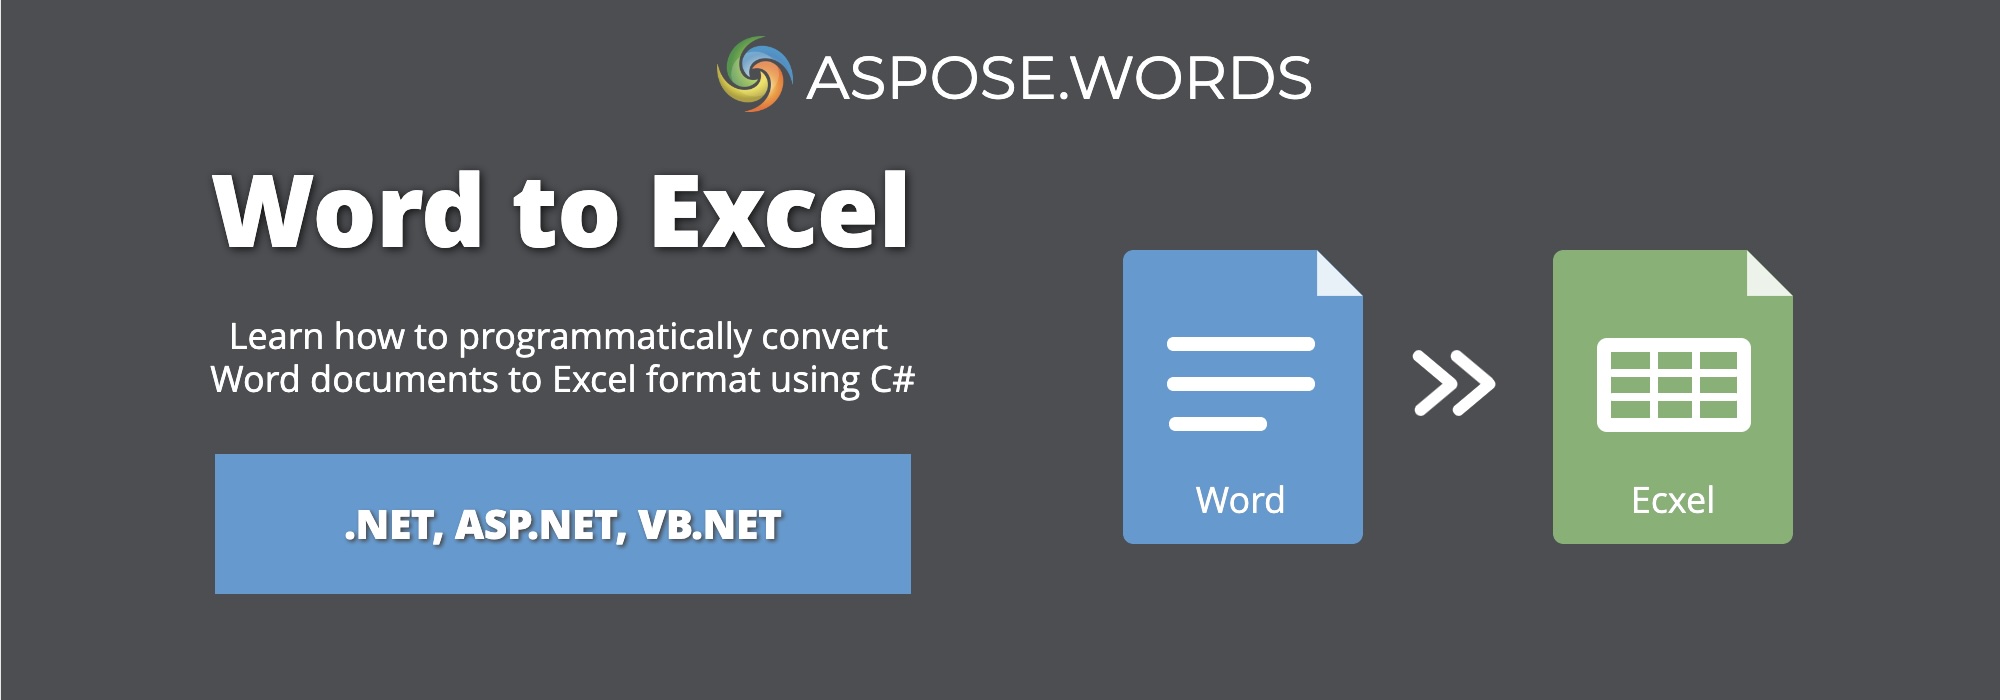 Převod Wordu do Excelu v C# | Převod DOCX do XLSX v C#